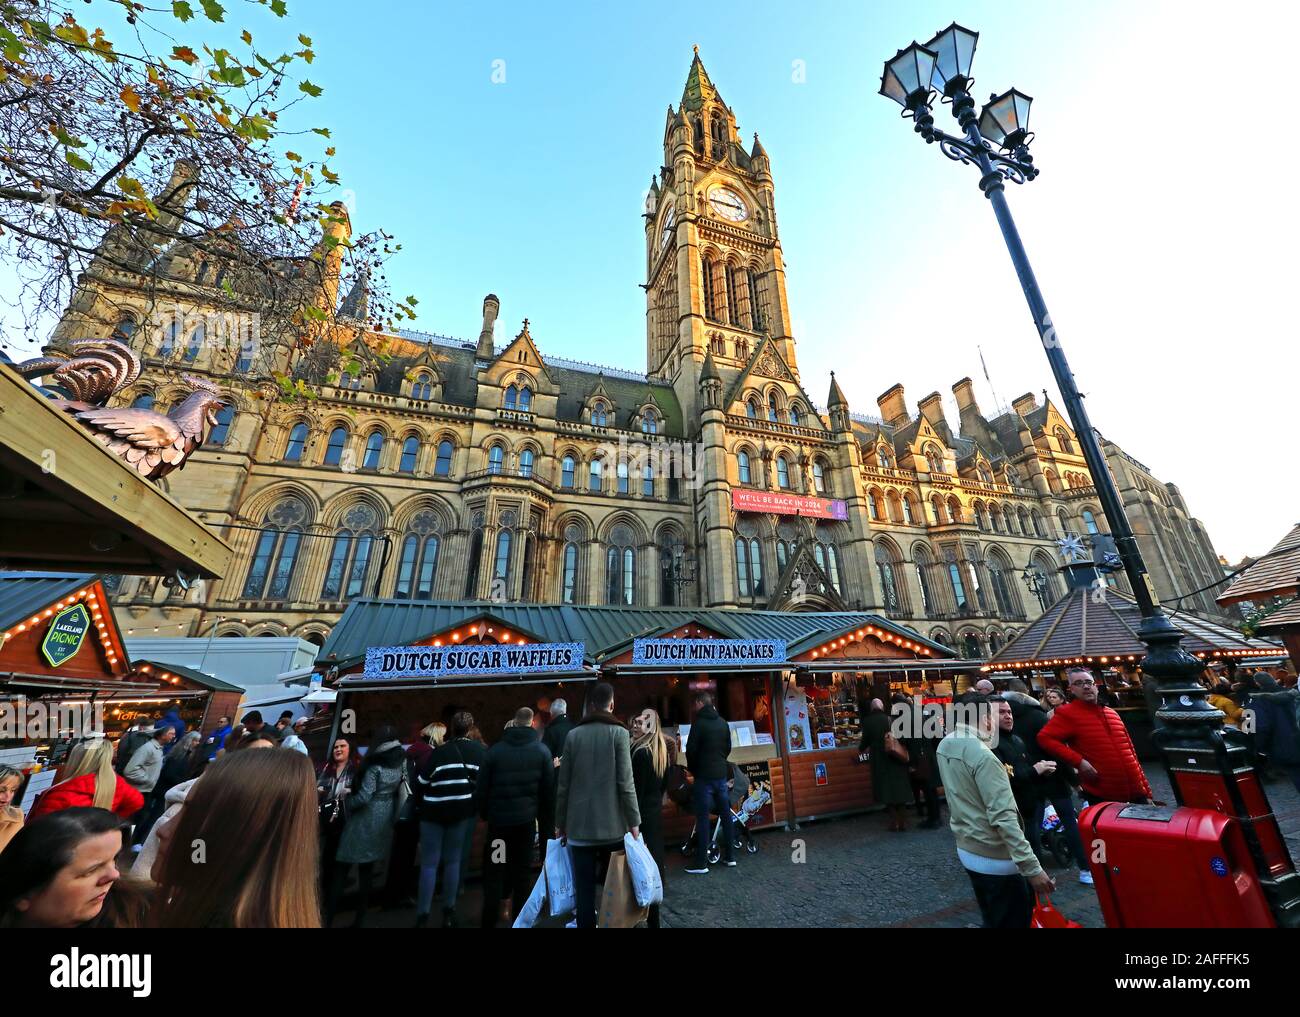 Weihnachtsmärkte, Manchester Town Hall, Albert Square, Manchester, England, Großbritannien, M2 5 DB Stockfoto